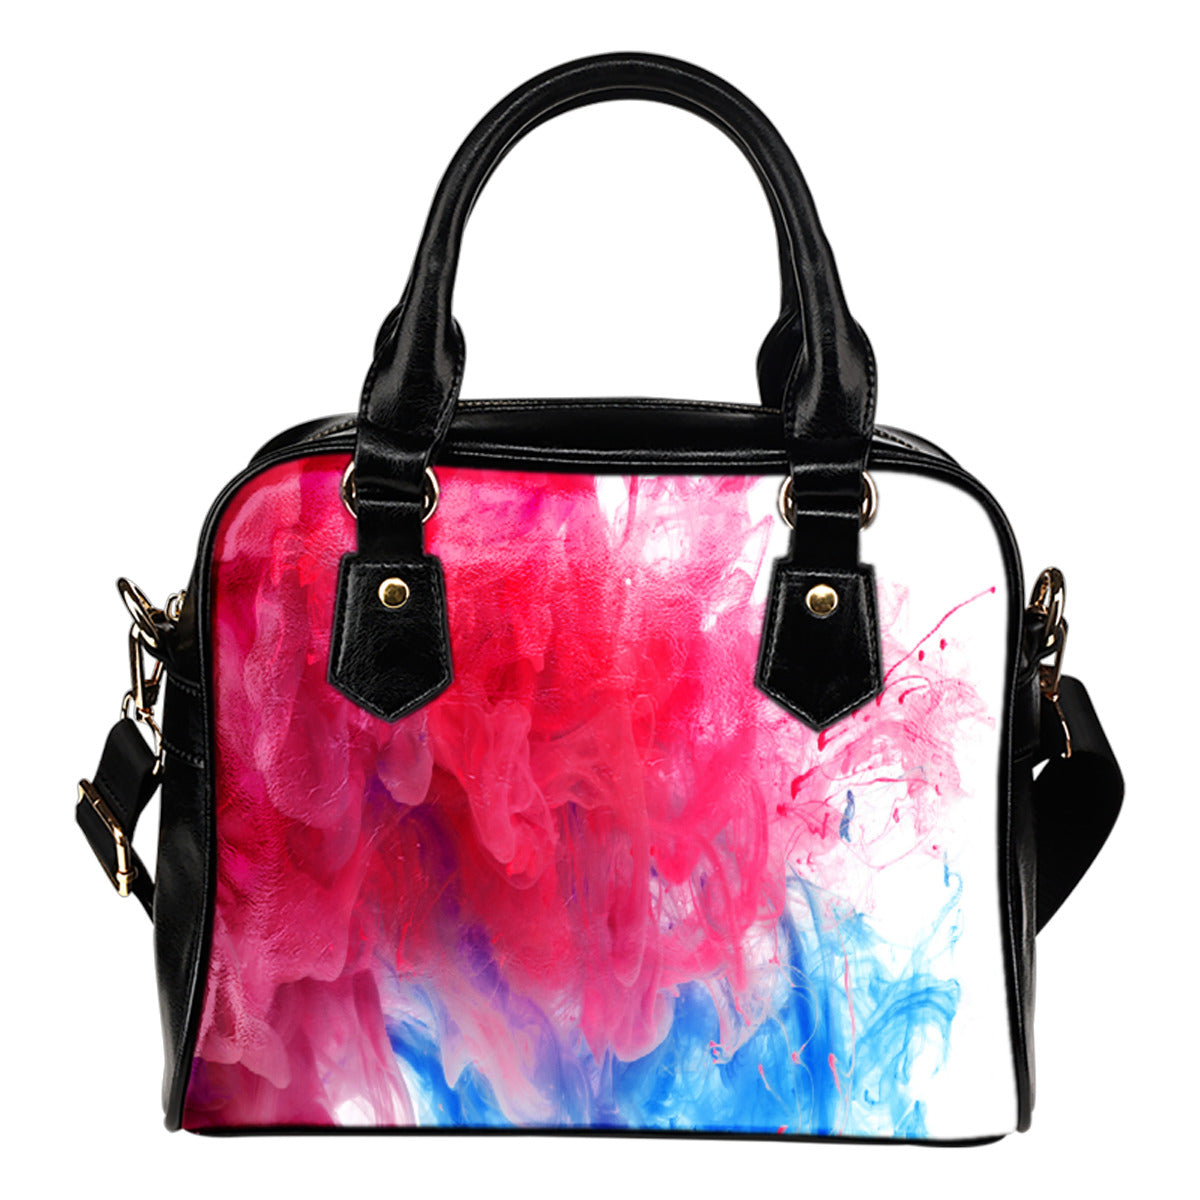 Watercolor Shoulder Handbag